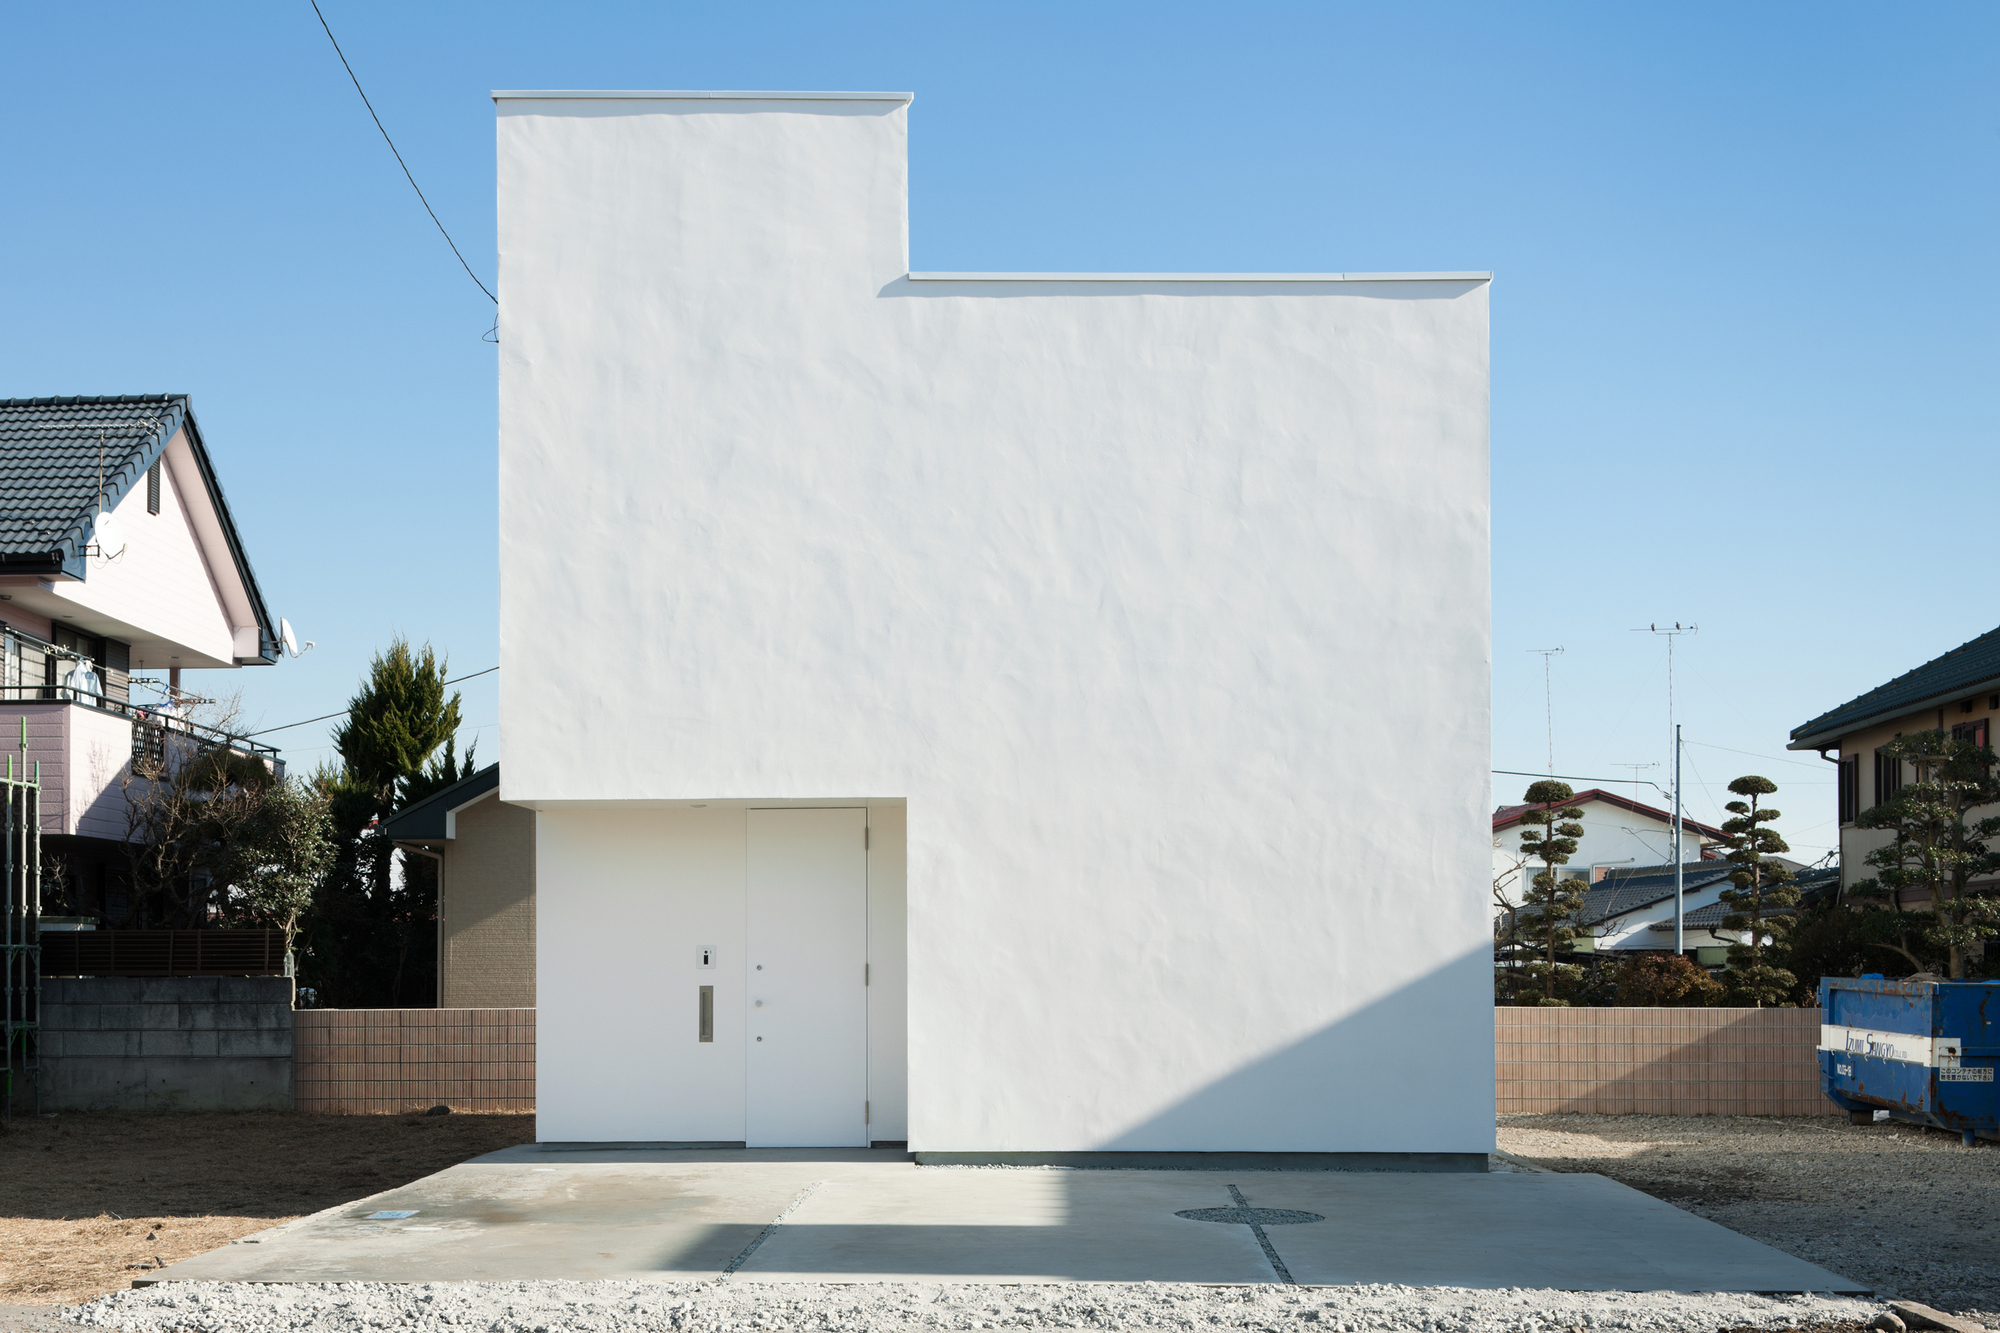 House in Utsunomiya2 / Soeda Associates Architects